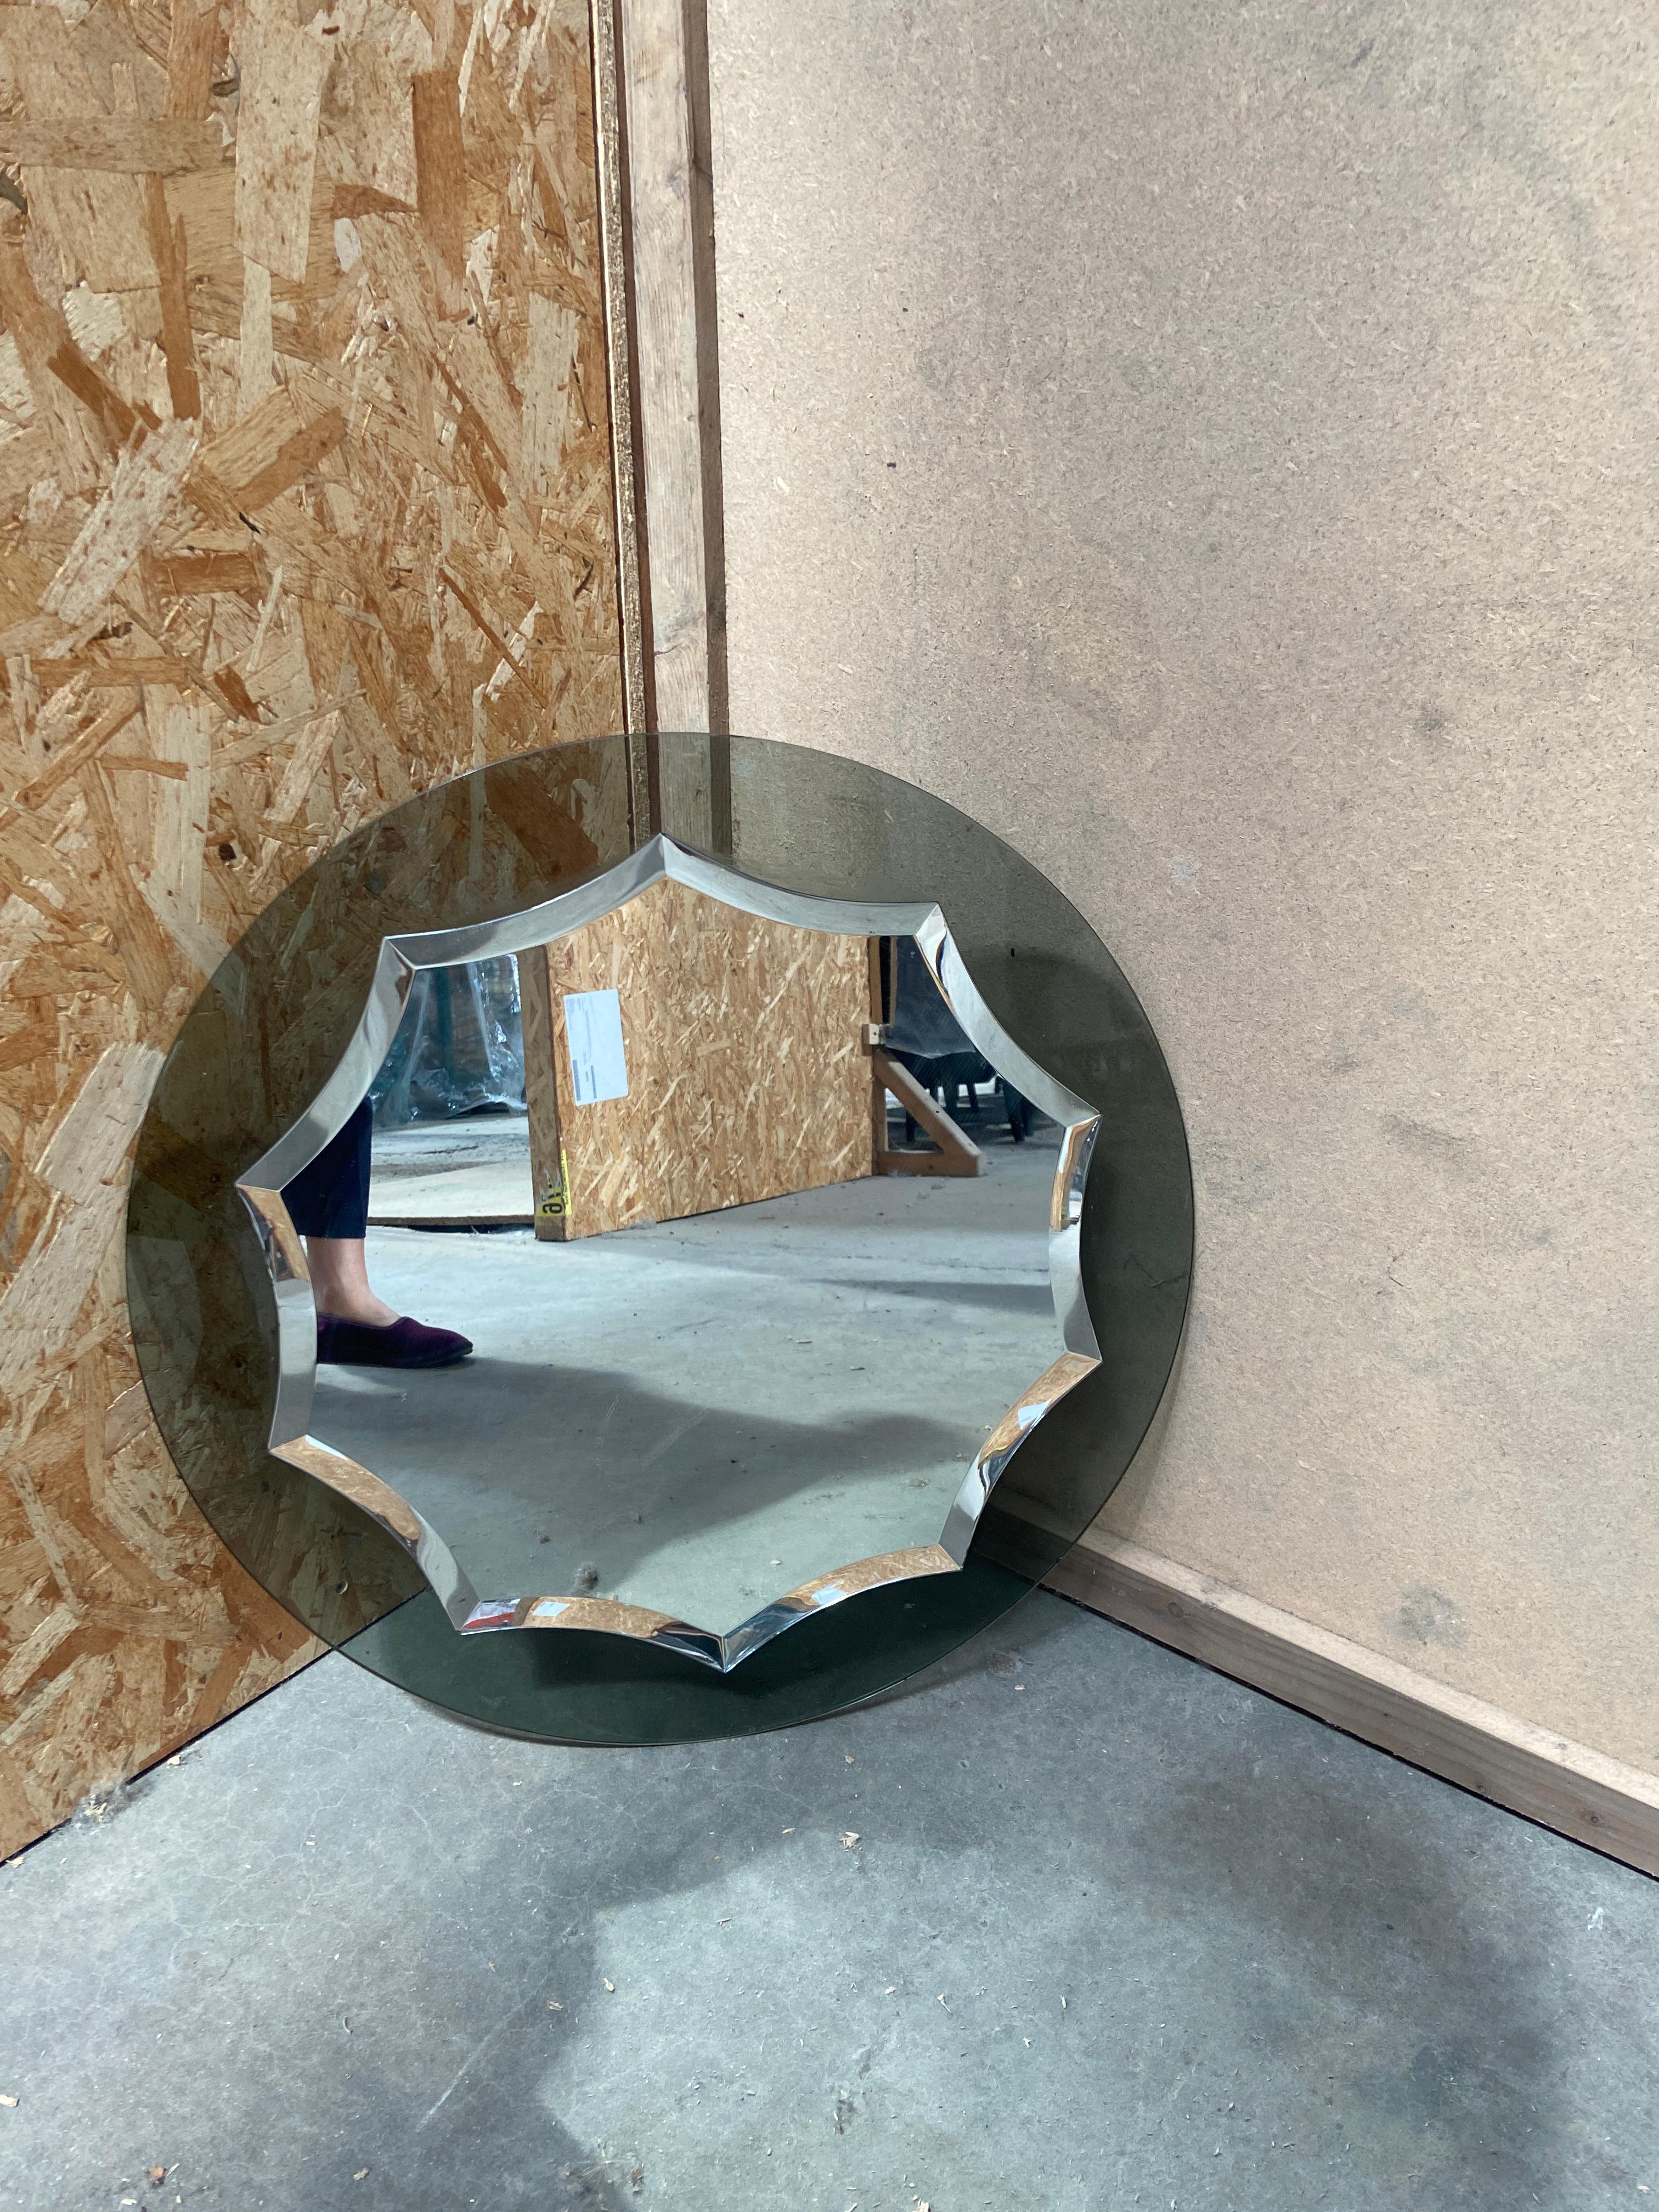 Miroir mural biseauté avec cadre en verre fumé par Veca dans les années 1970.
Ce miroir était à l'origine fixé au mur avec de la colle. Il est possible de prévoir un crochet pour sa mise en place. Devis sur demande
Le diamètre total de l'objet est